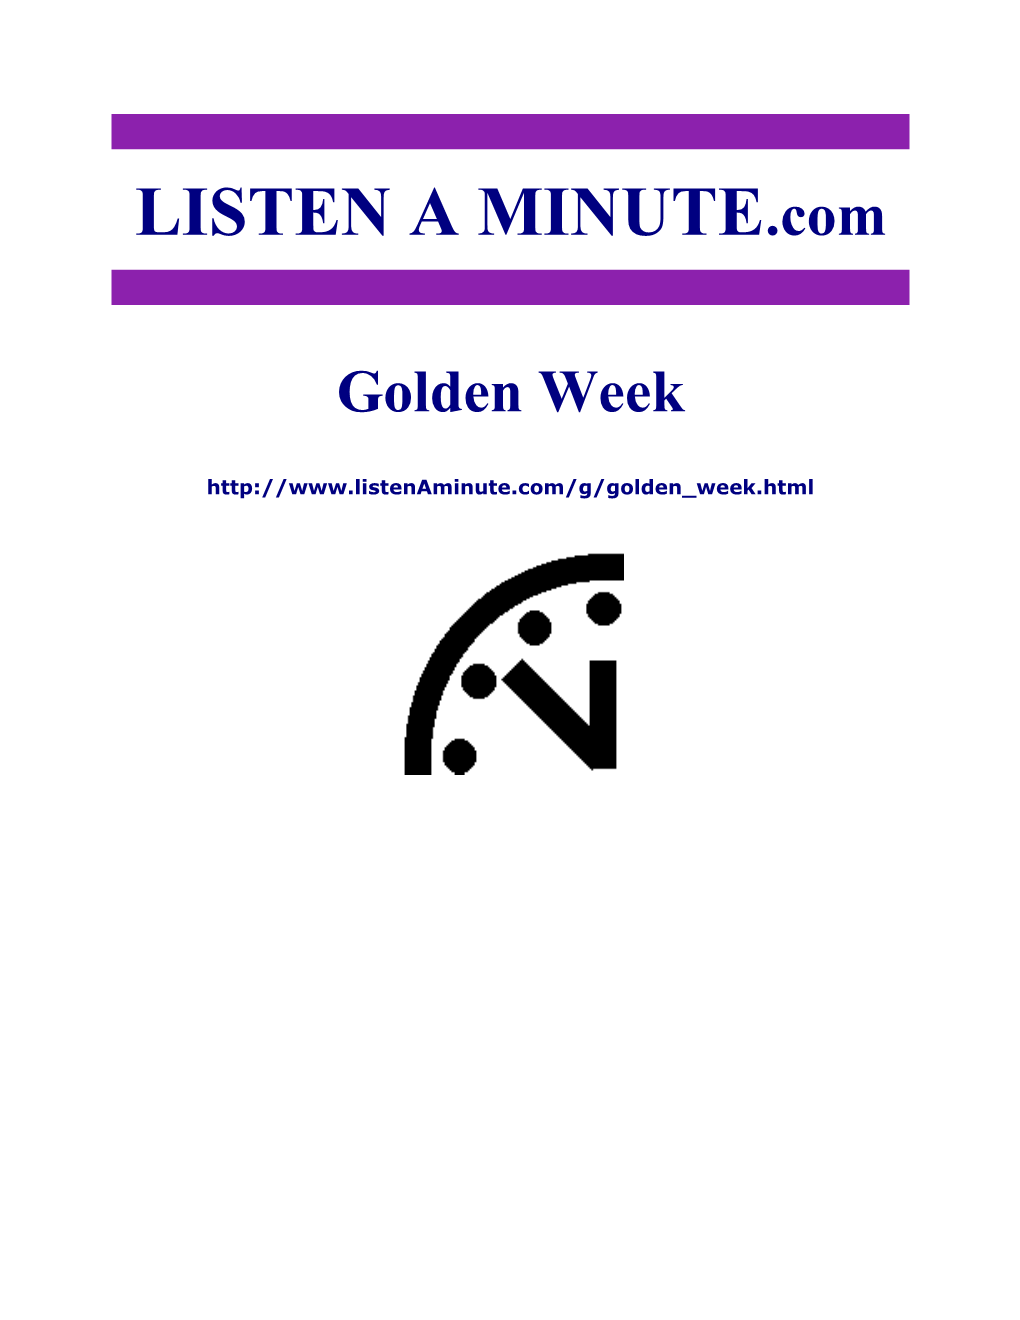 Listen a Minute.Com - ESL Listening - Golden Week